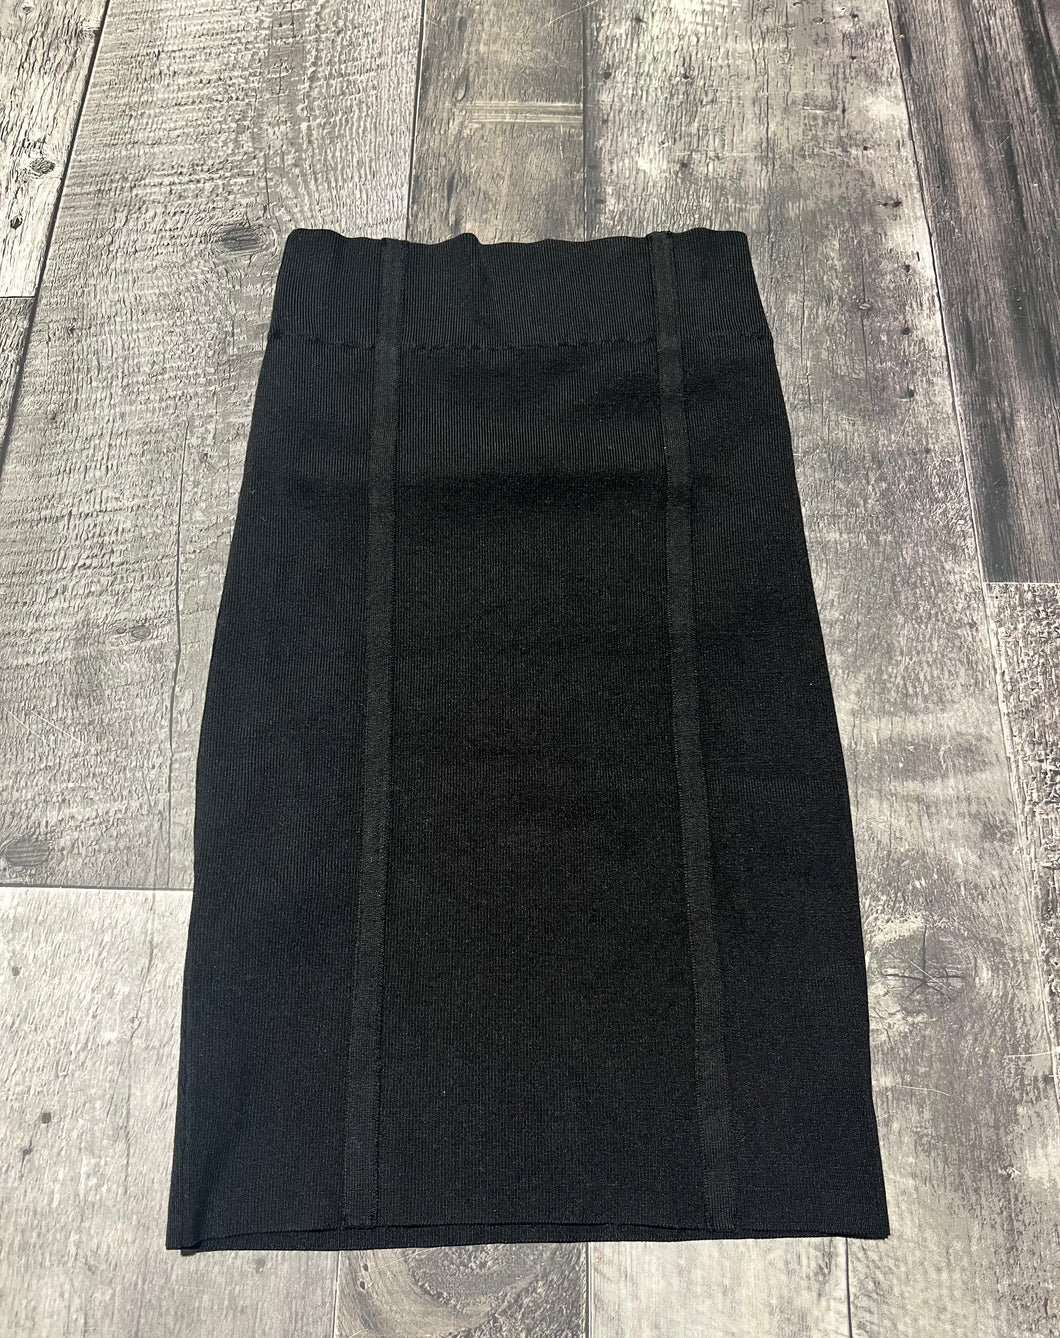 BCBG black skirt - Hers size M